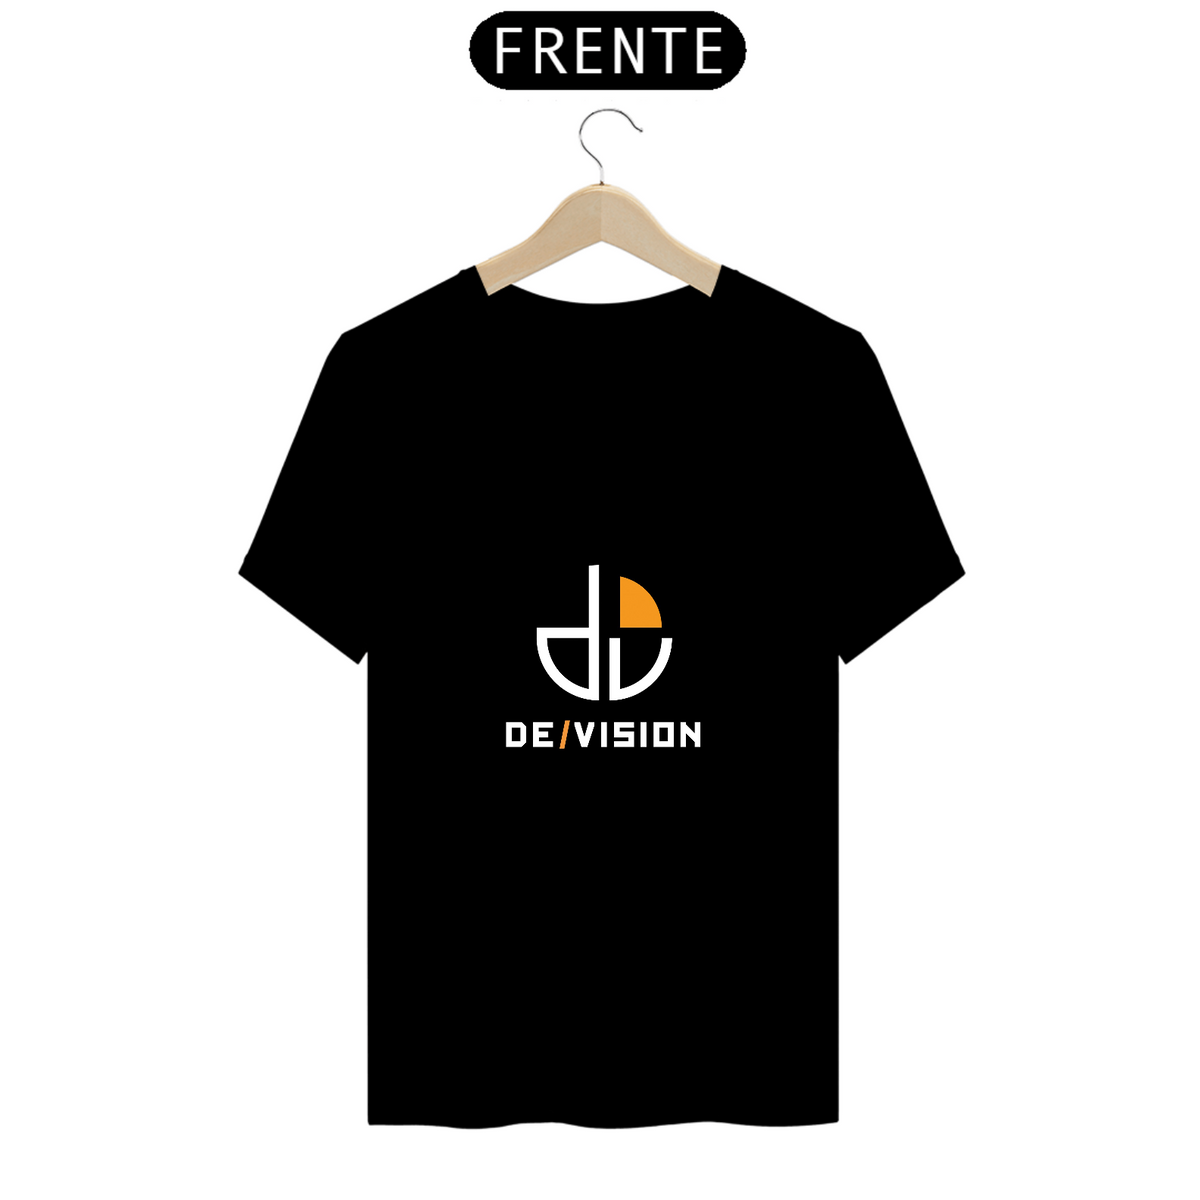 Nome do produto: Camiseta De/vision